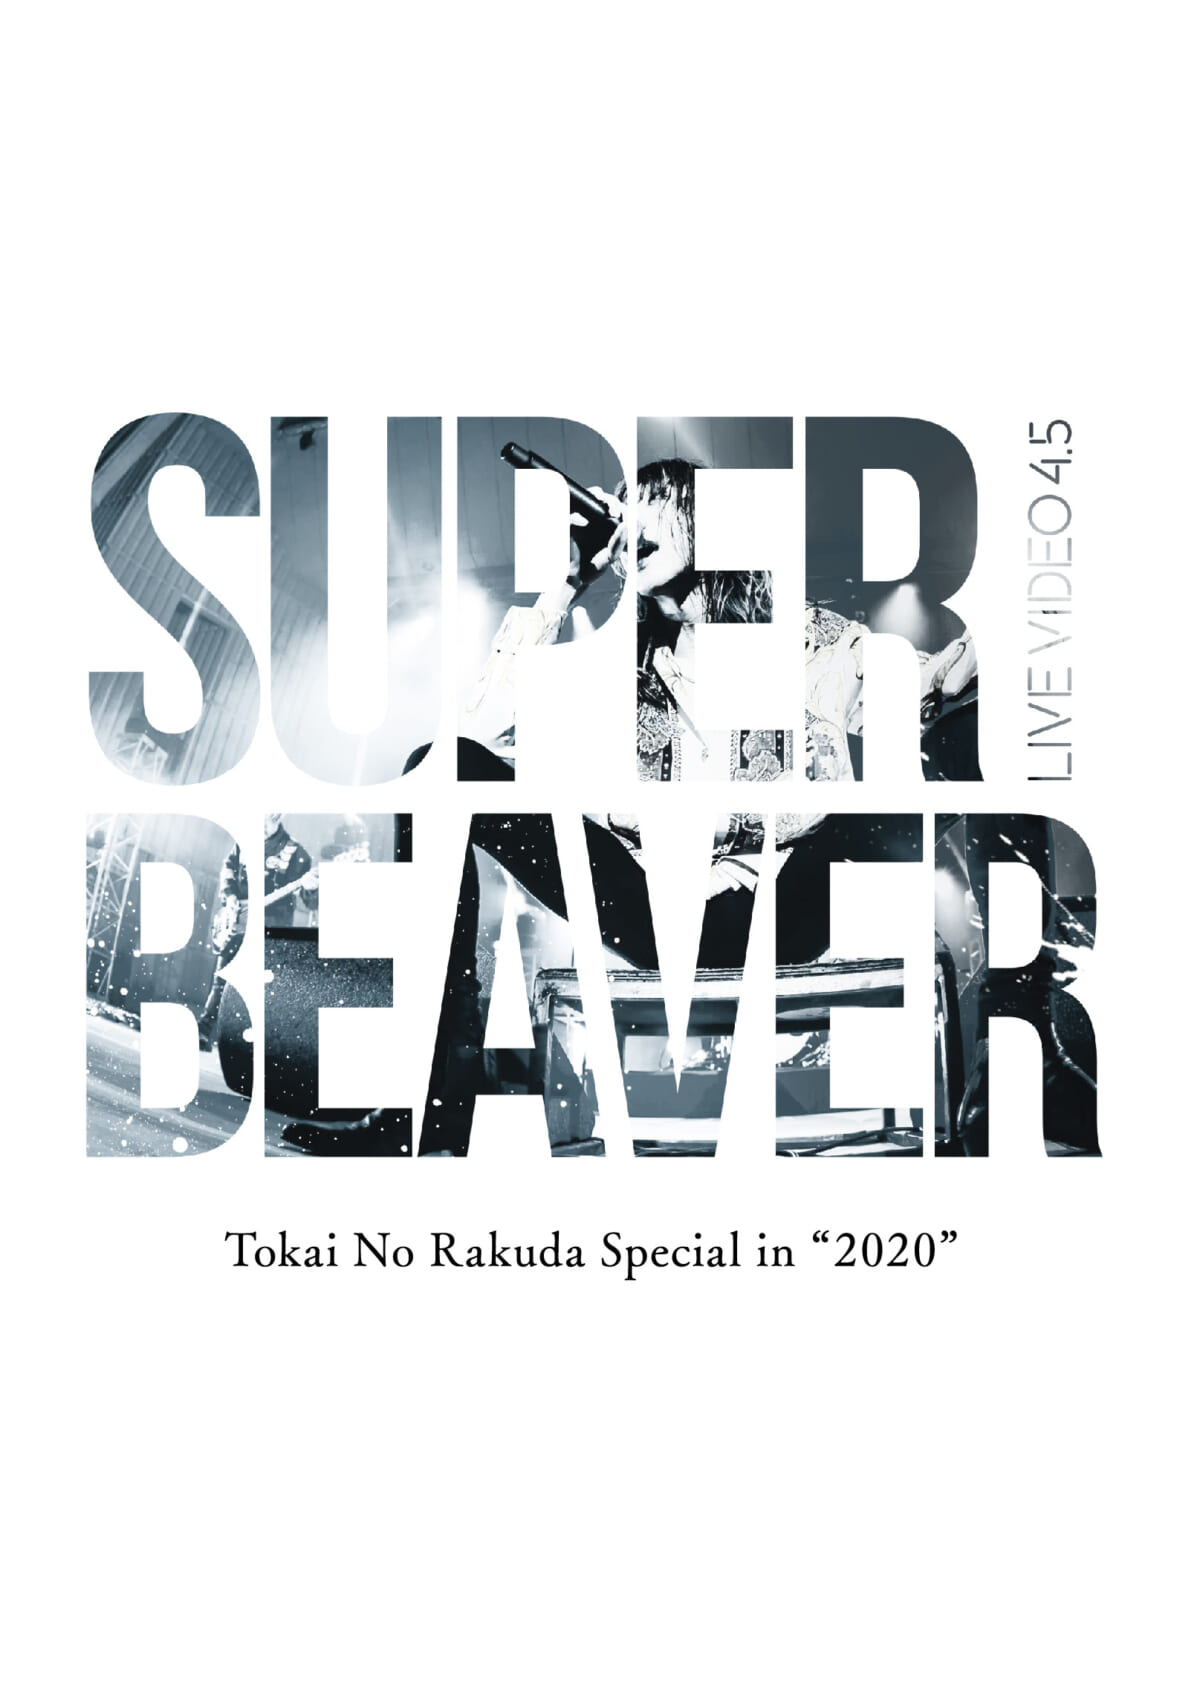 『LIVE VIDEO 4.5 Tokai No Rakuda Special in “2020”』DVD